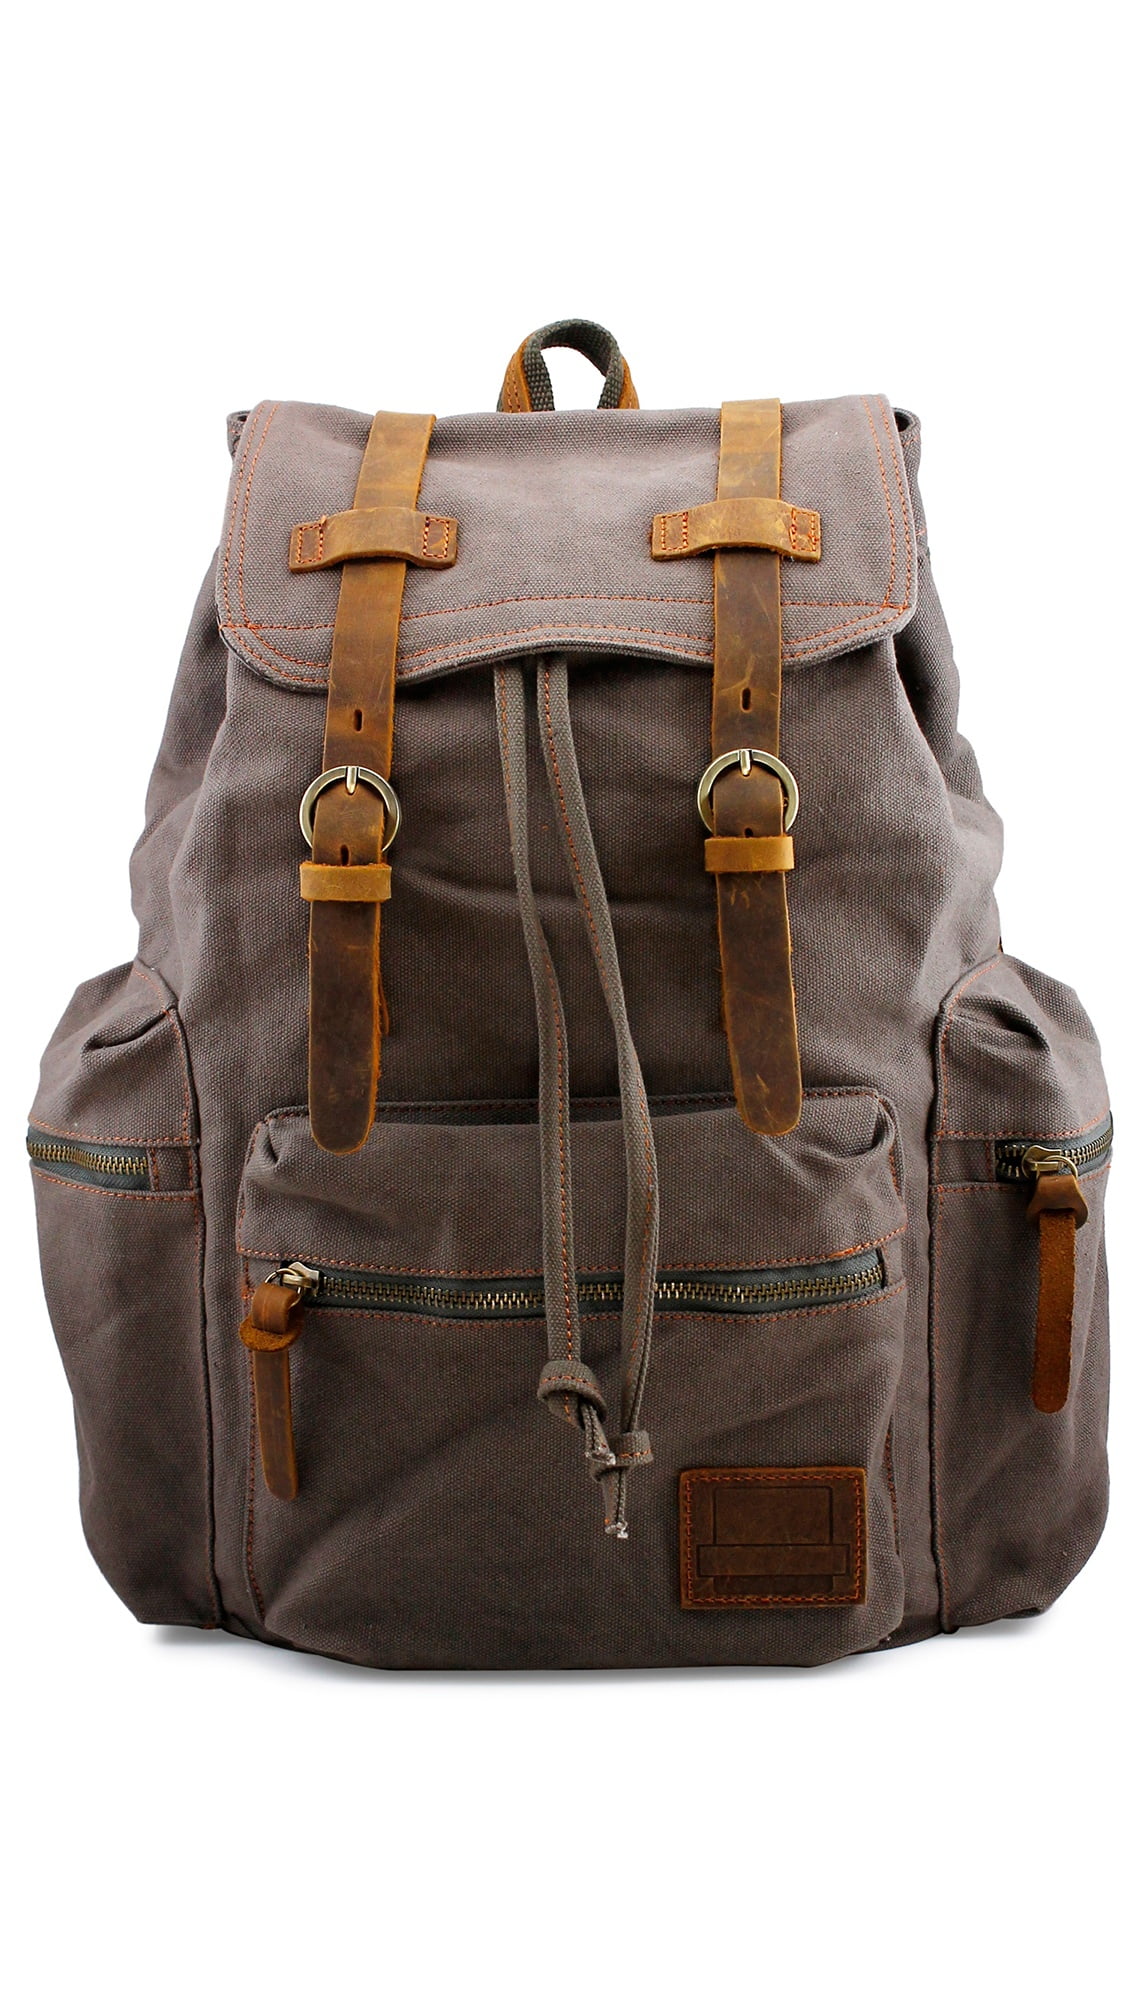 New Large Leather Bag Backpack Men Laptop S Travel Large Vintage Hiking Camping 